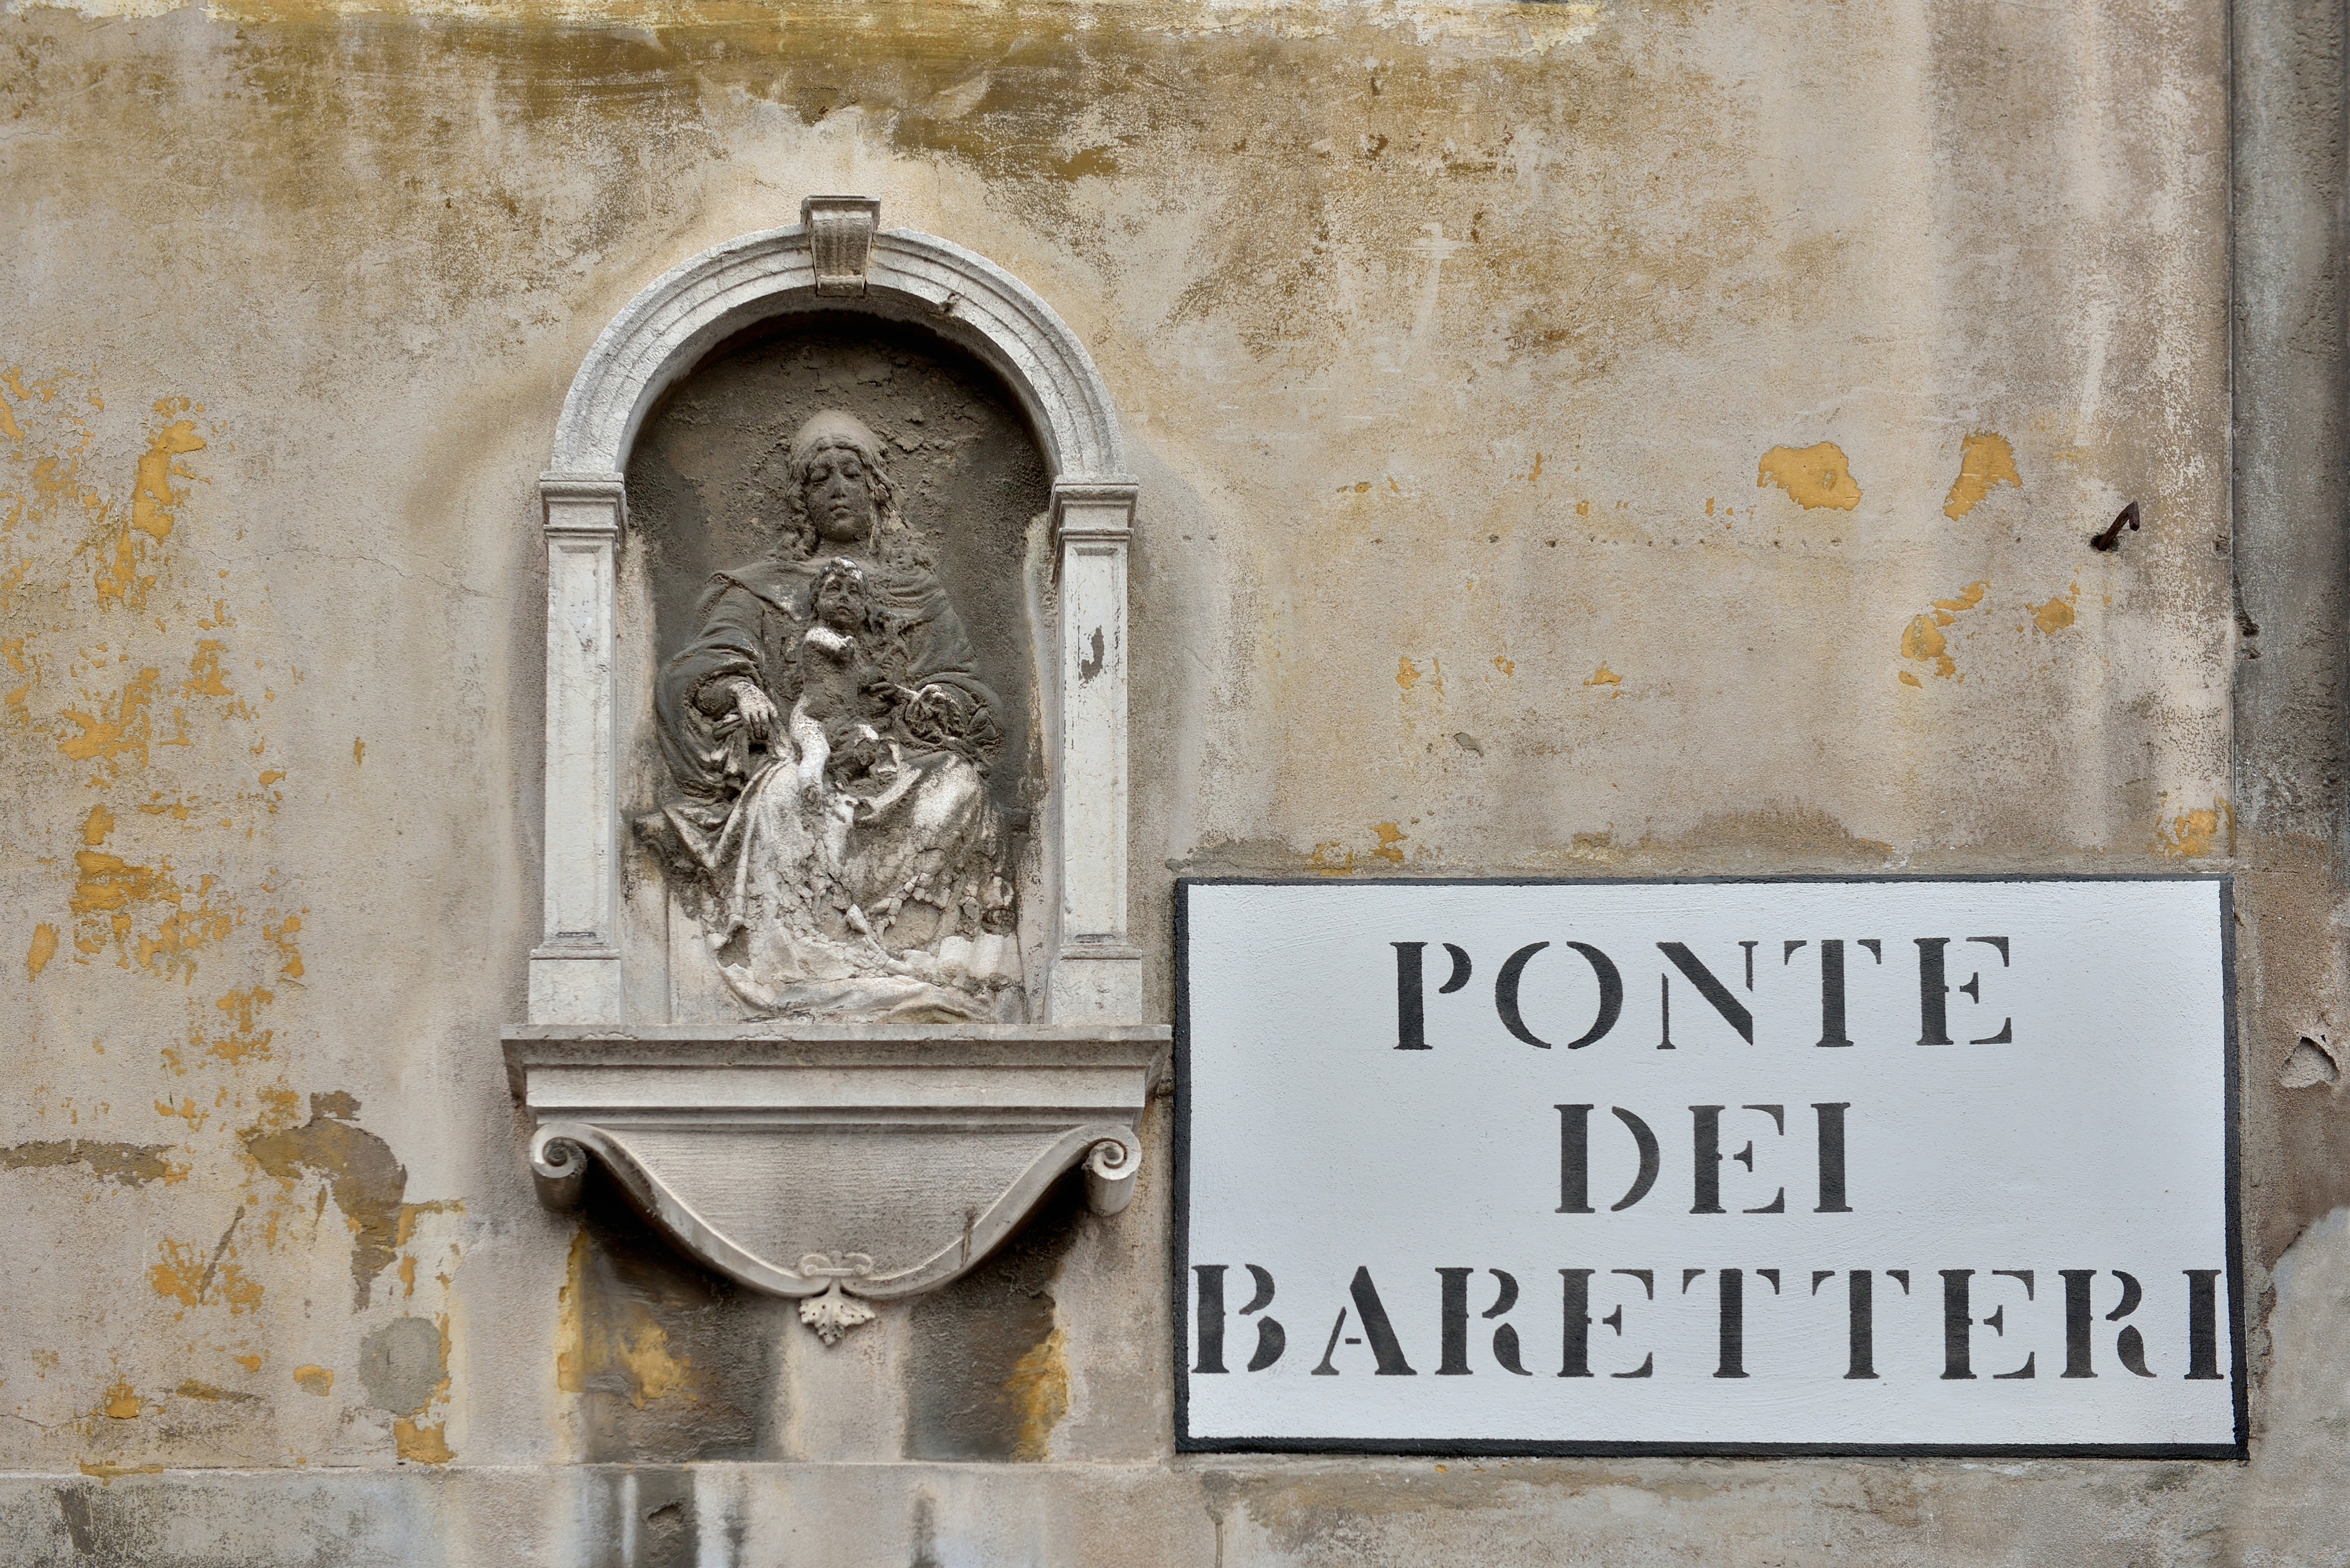 Madonna con bambino al Ponte dei Bareteri Venezia